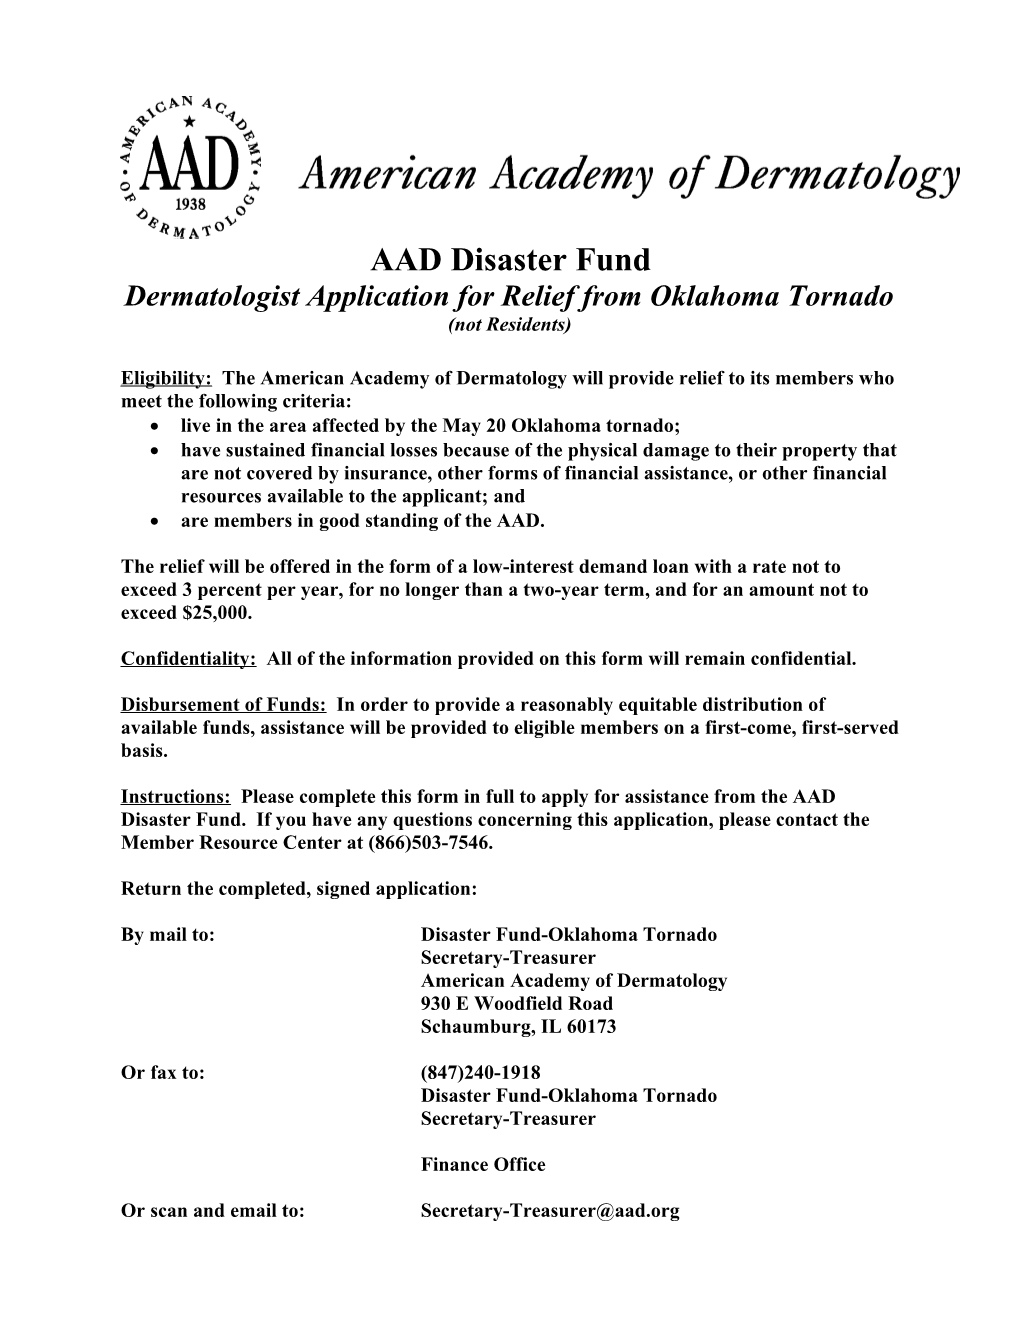 AAD Midwest Flood Loan Program Dermatologists (1050241)